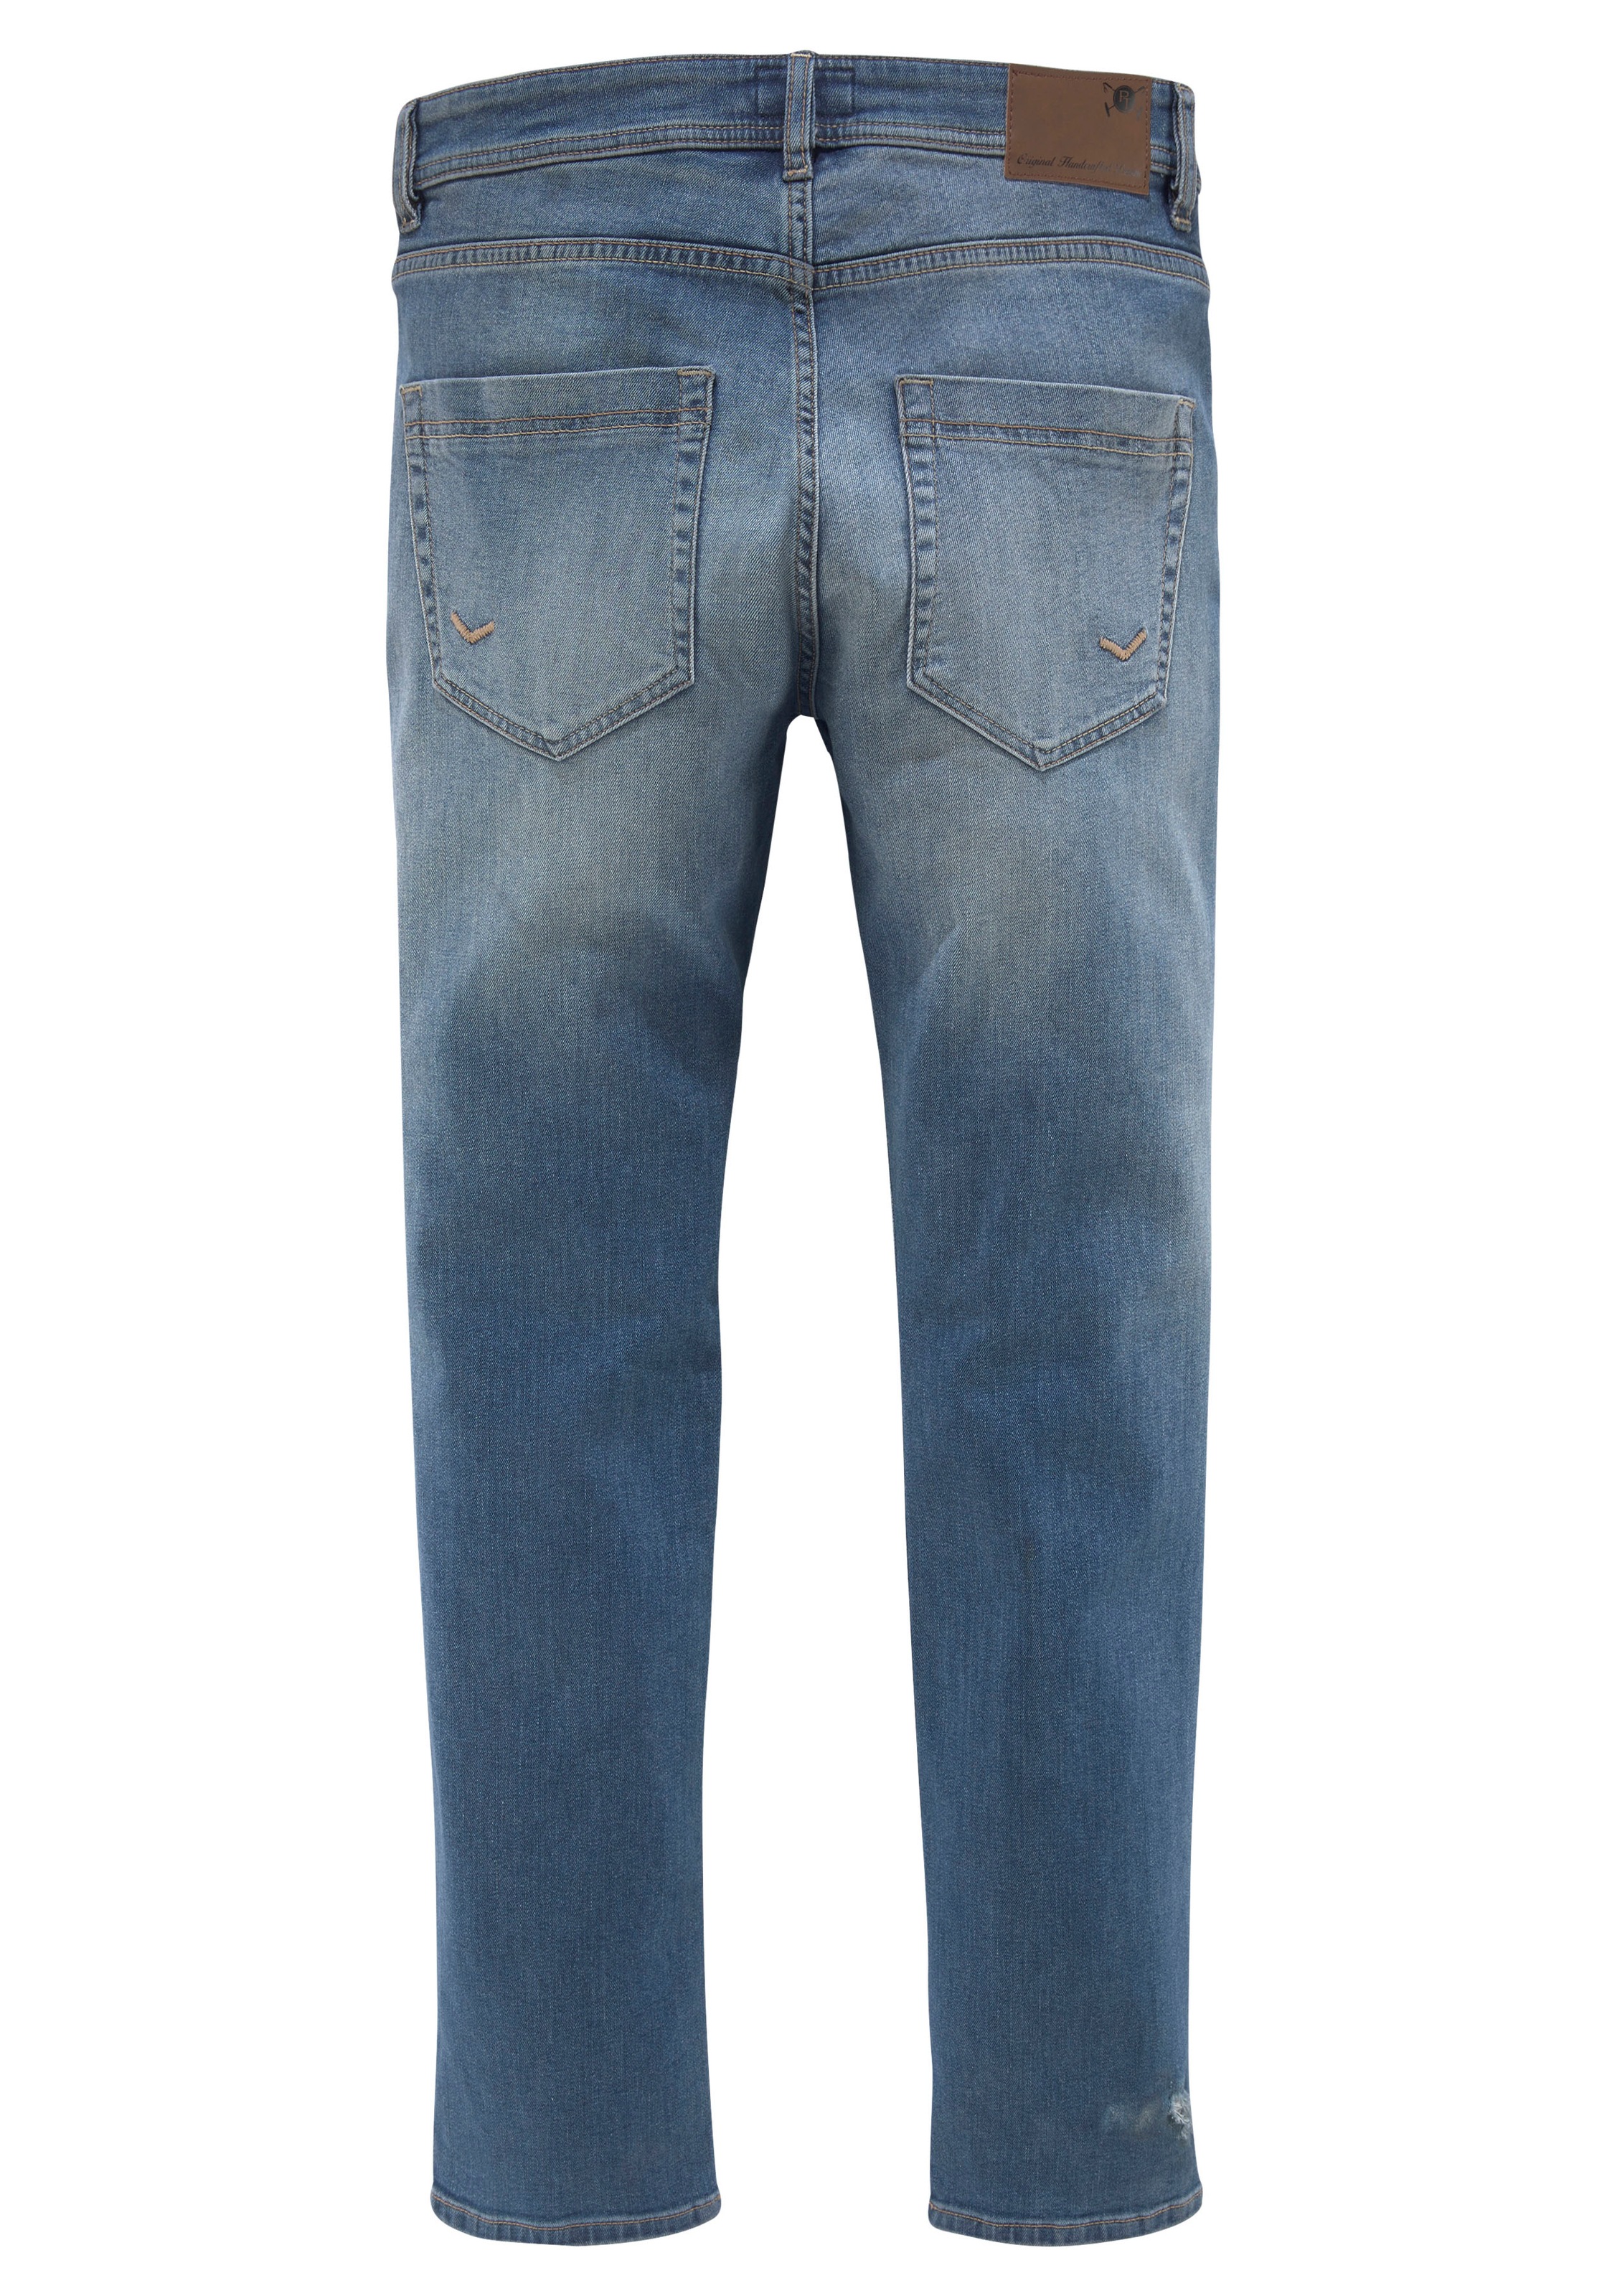 Team mit used online kaufen 5-Pocket-Jeans bei OTTO »DAVIS«, Waschung TOM TAILOR Polo